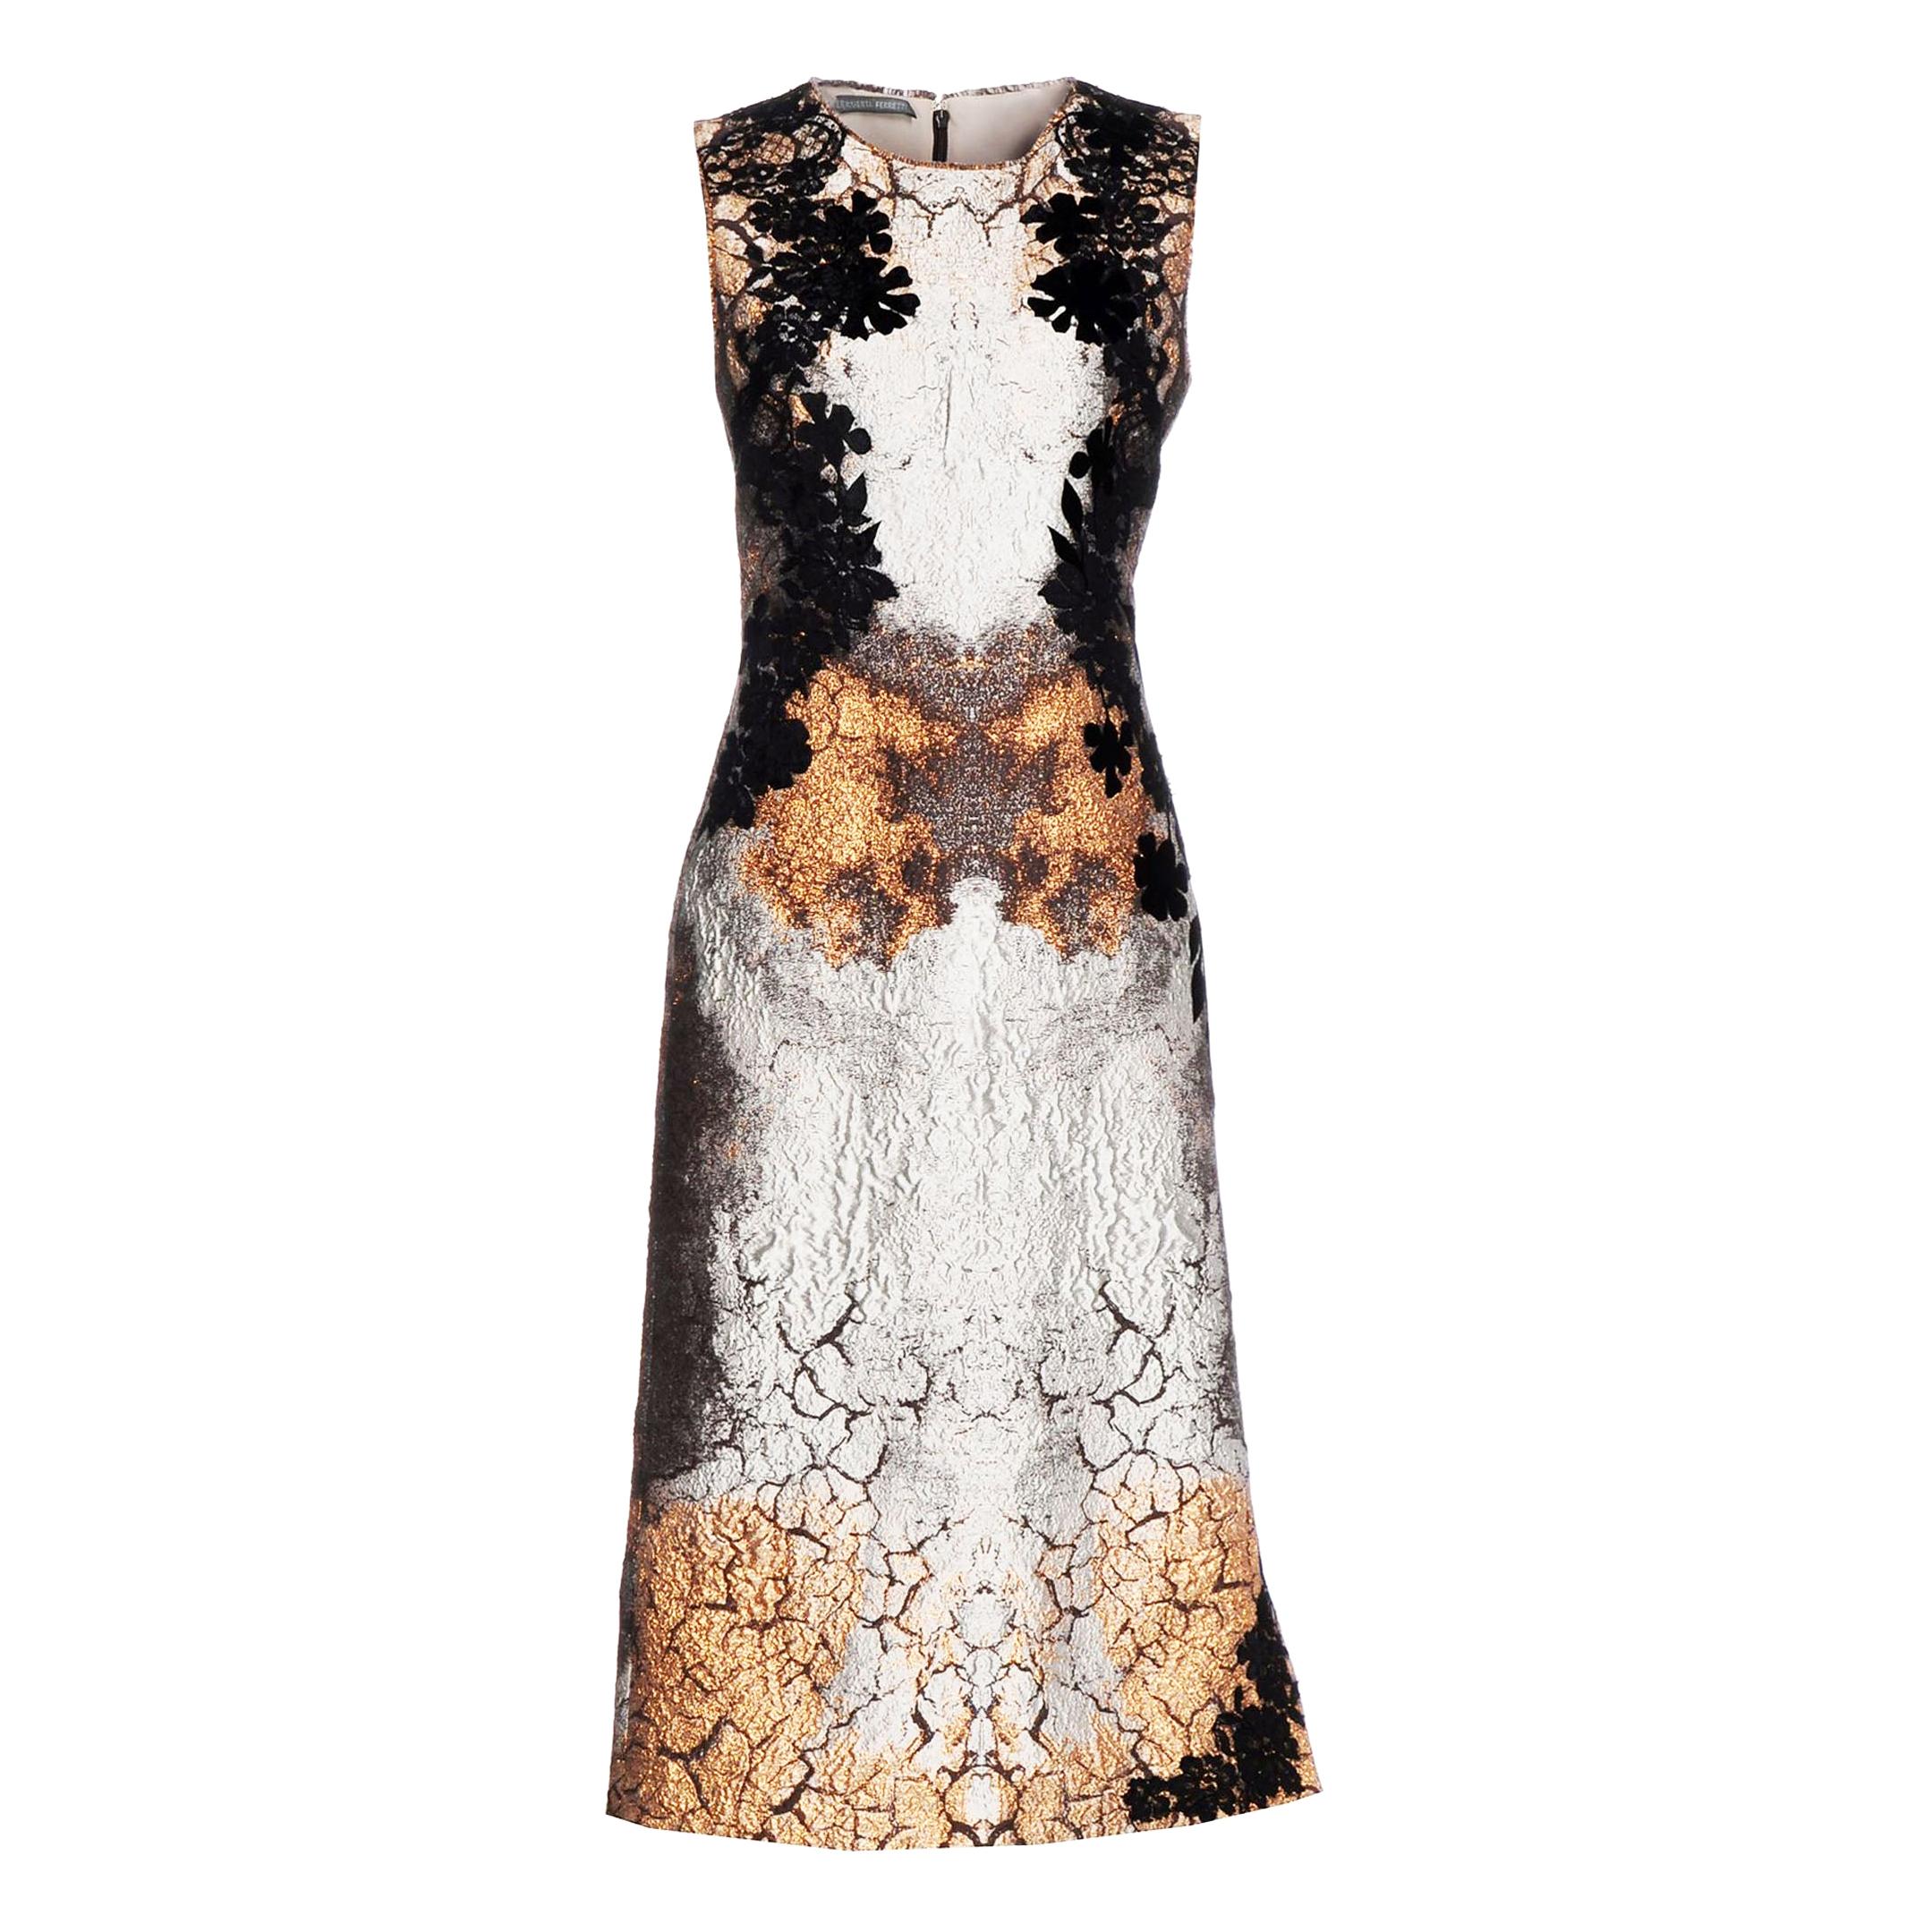 New Alberta Ferretti Bronze Metallic Jacquard Dress with Application It. 44 US 8